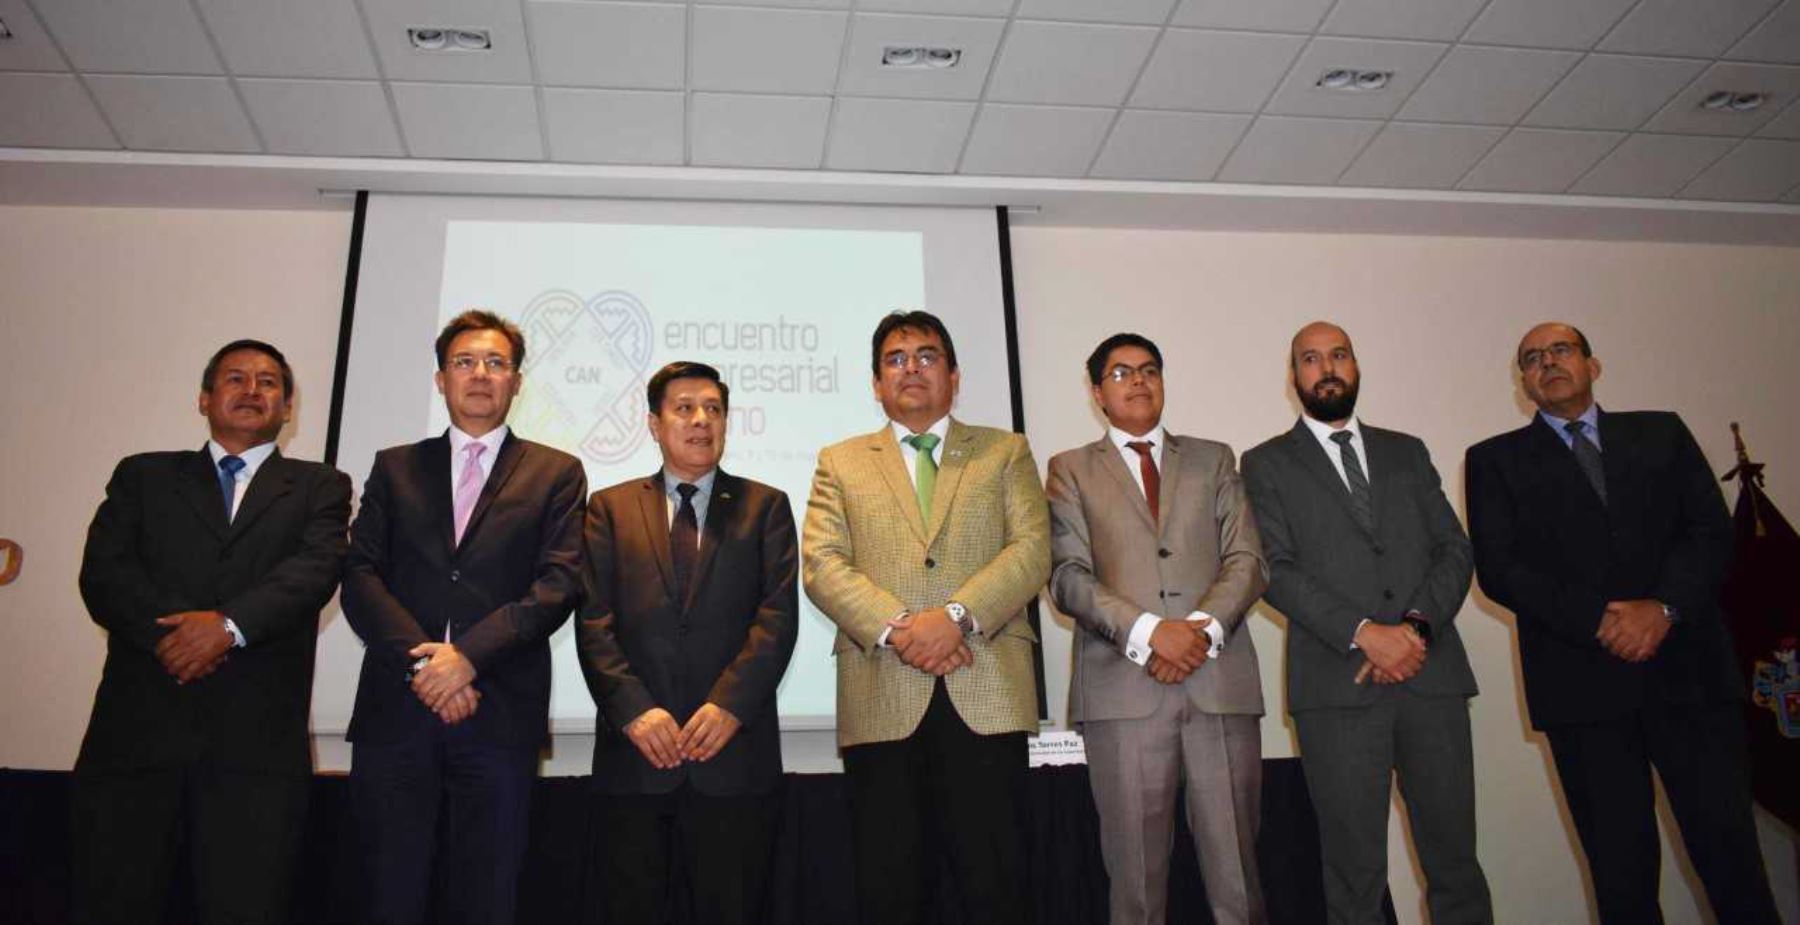 Encuentro Empresarial Andino recibirá a 500 empresarios de Bolivia, Colombia, Ecuador y Perú